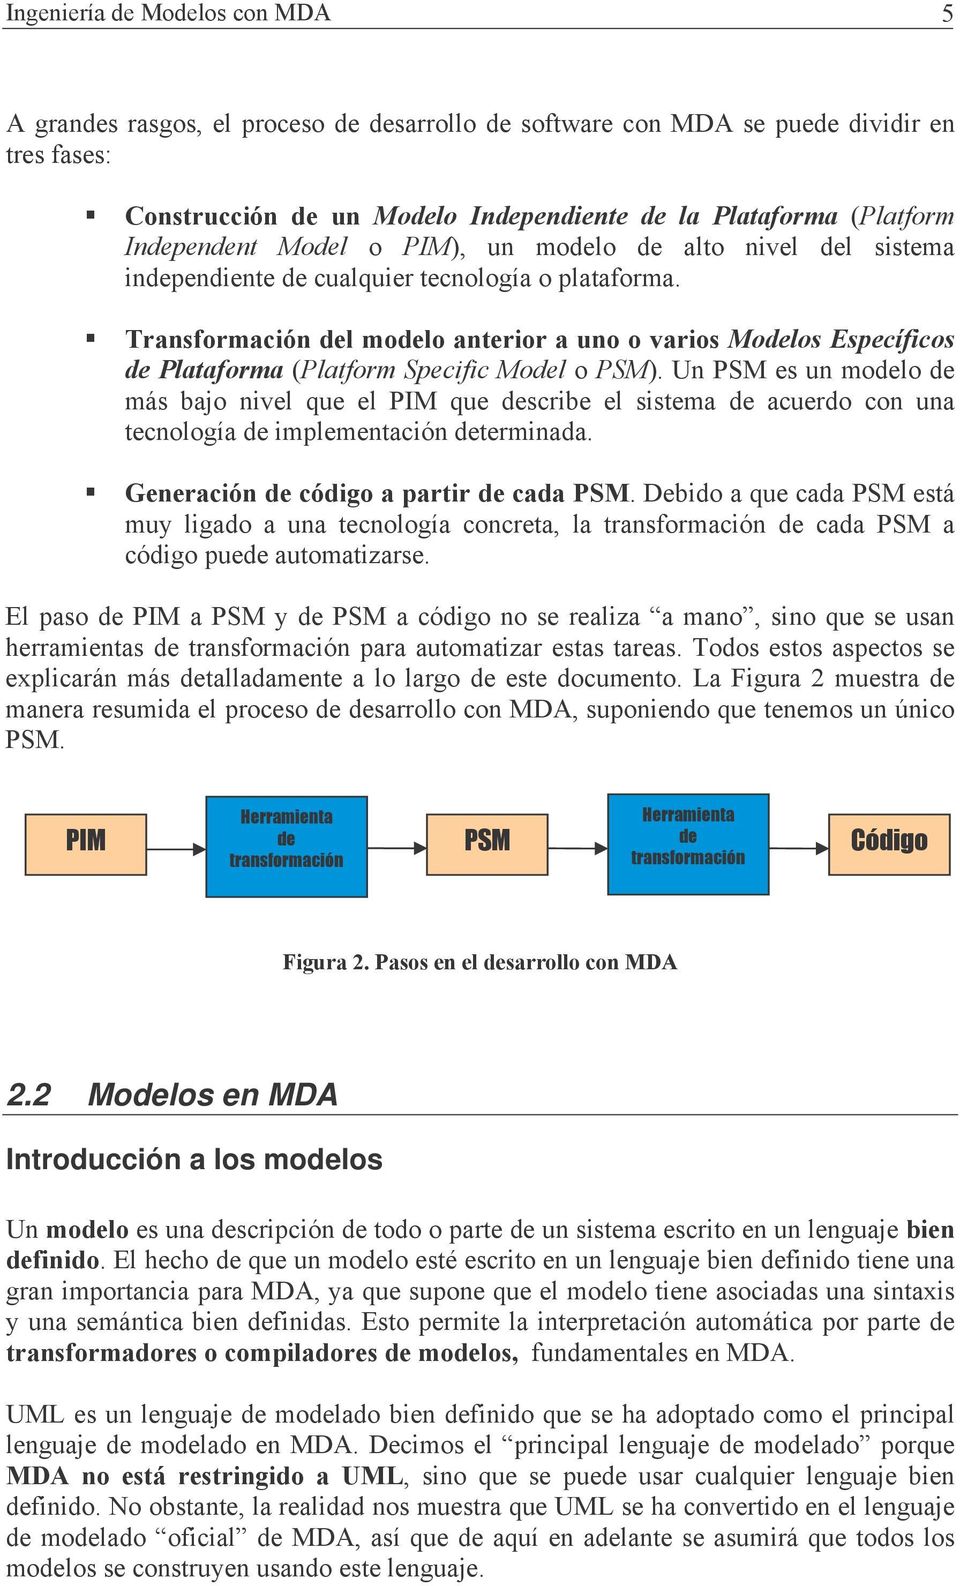 2.2 Modelos en MDA Introducción a los modelos " 9 * +: : F L 9-9/EF F B - +